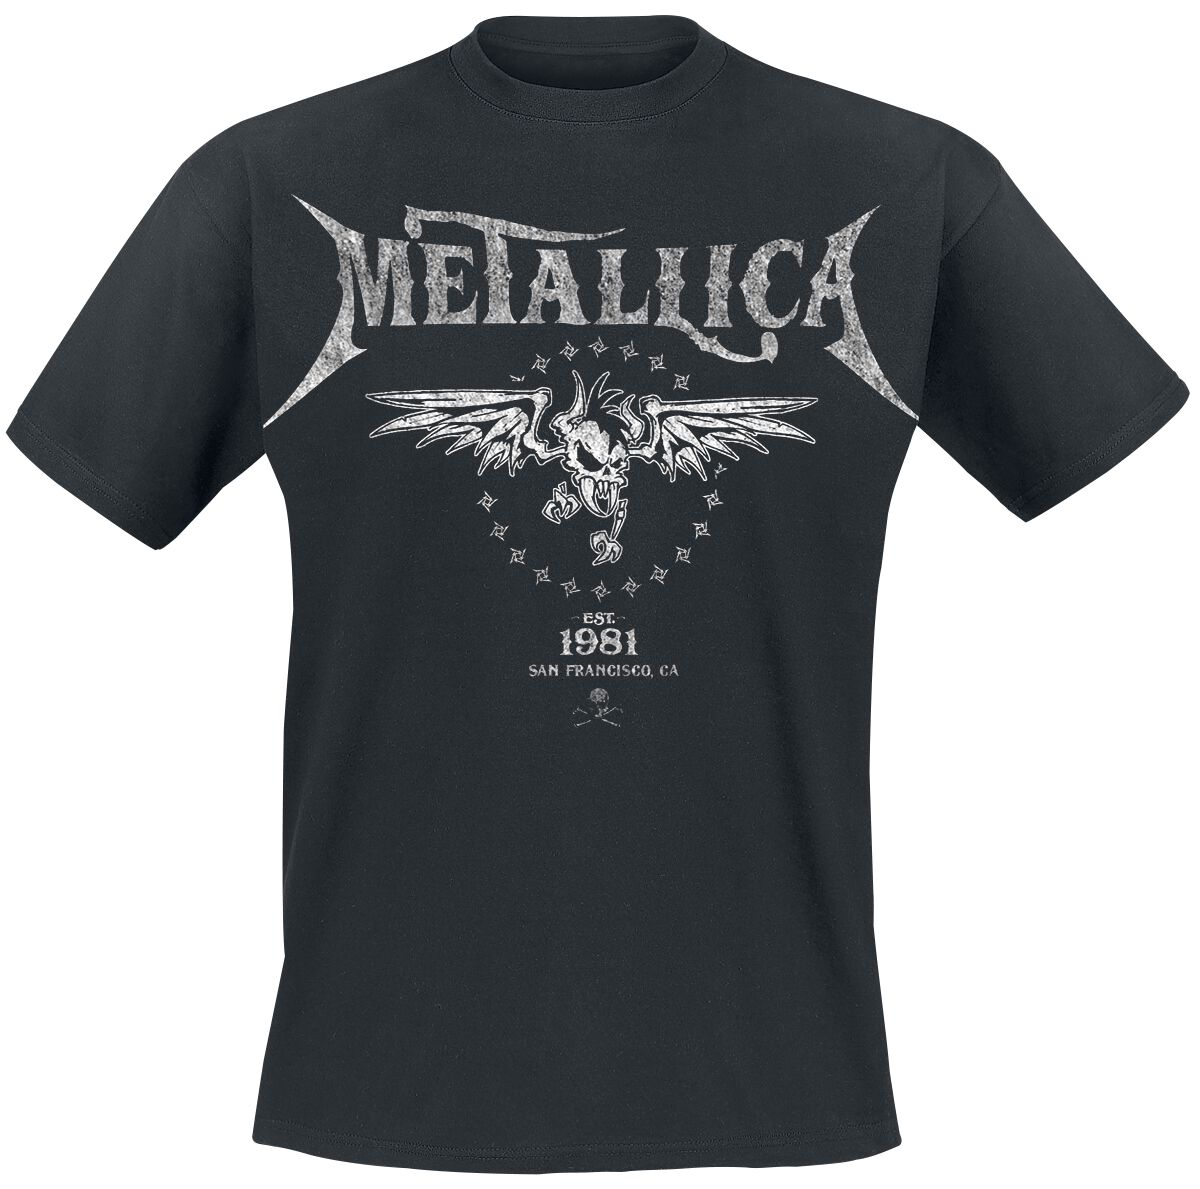 Metallica T-Shirt - Biker - S bis 5XL - für Männer - Größe S - schwarz  - Lizenziertes Merchandise!